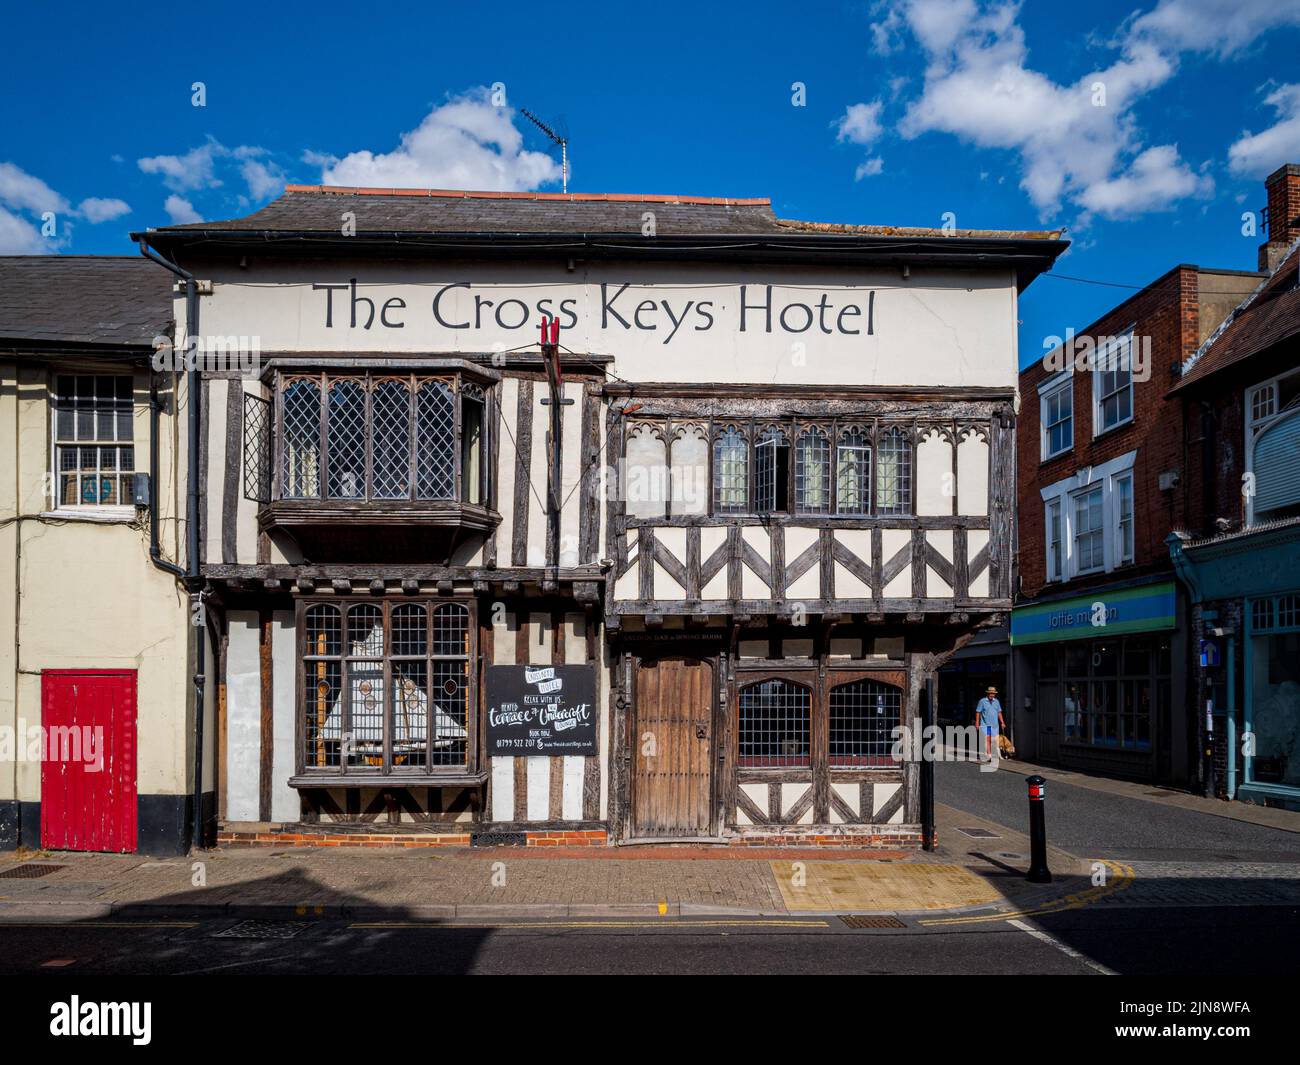 The Cross Keys Hotel Saffron Walden Essex Reino Unido. El Cross Keys Hotel es una posada del siglo 16th de diez habitaciones en el centro de la ciudad de Saffron Walden. Foto de stock